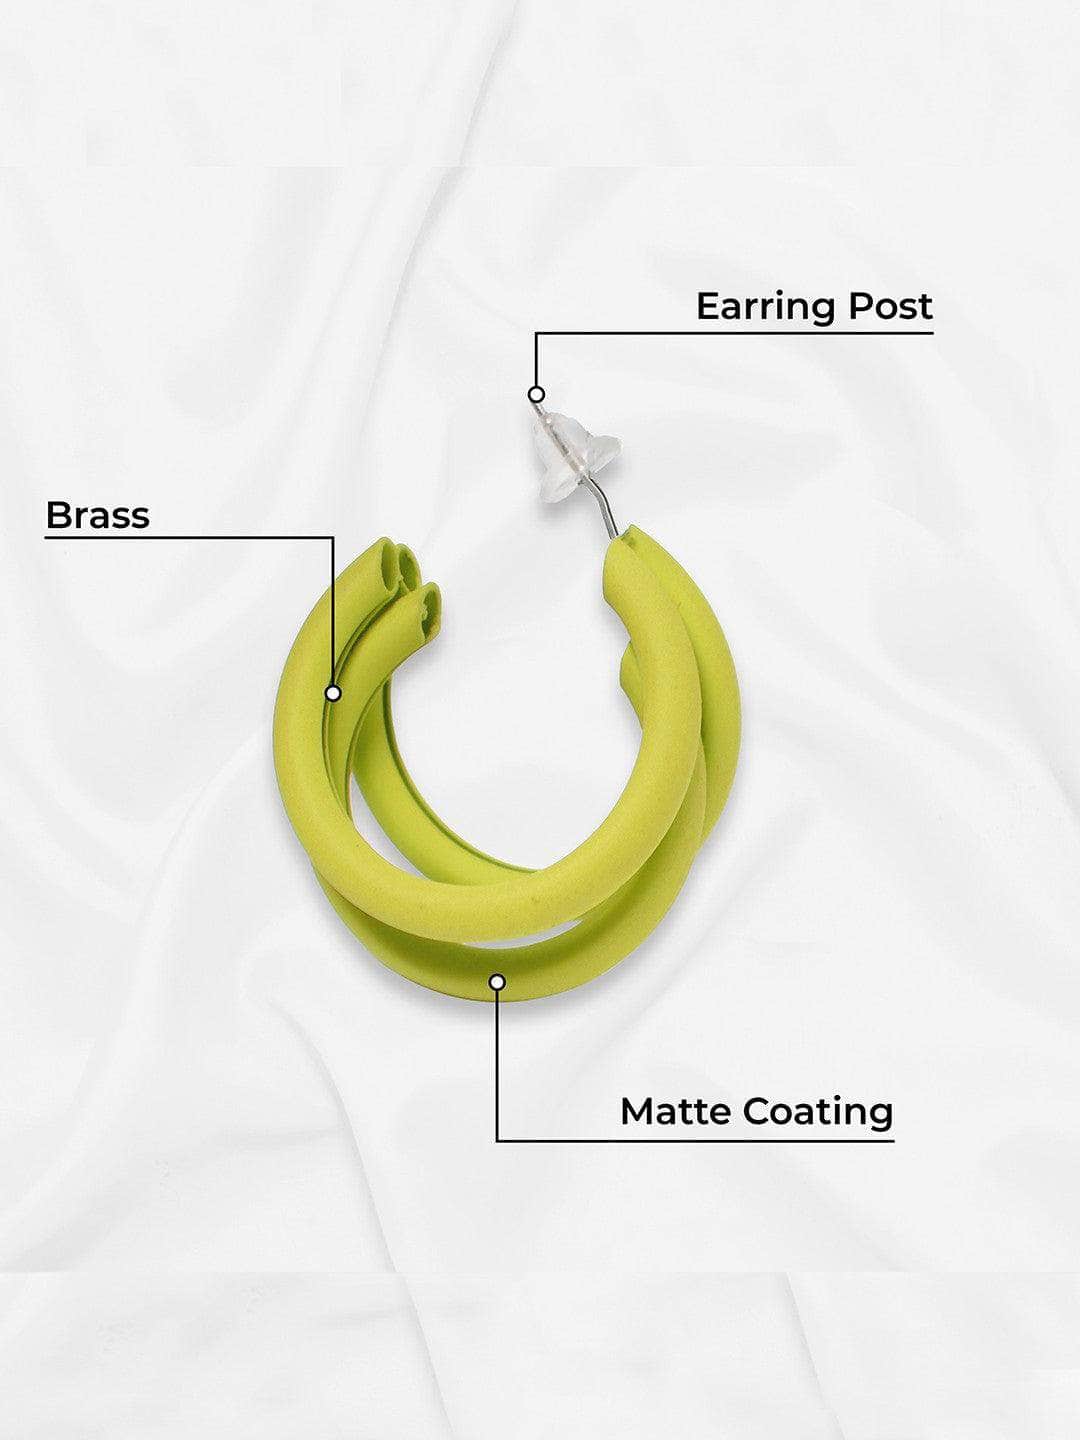 Ishhaara Huma Qureshi In Triple Hoop Earrings - Yellow